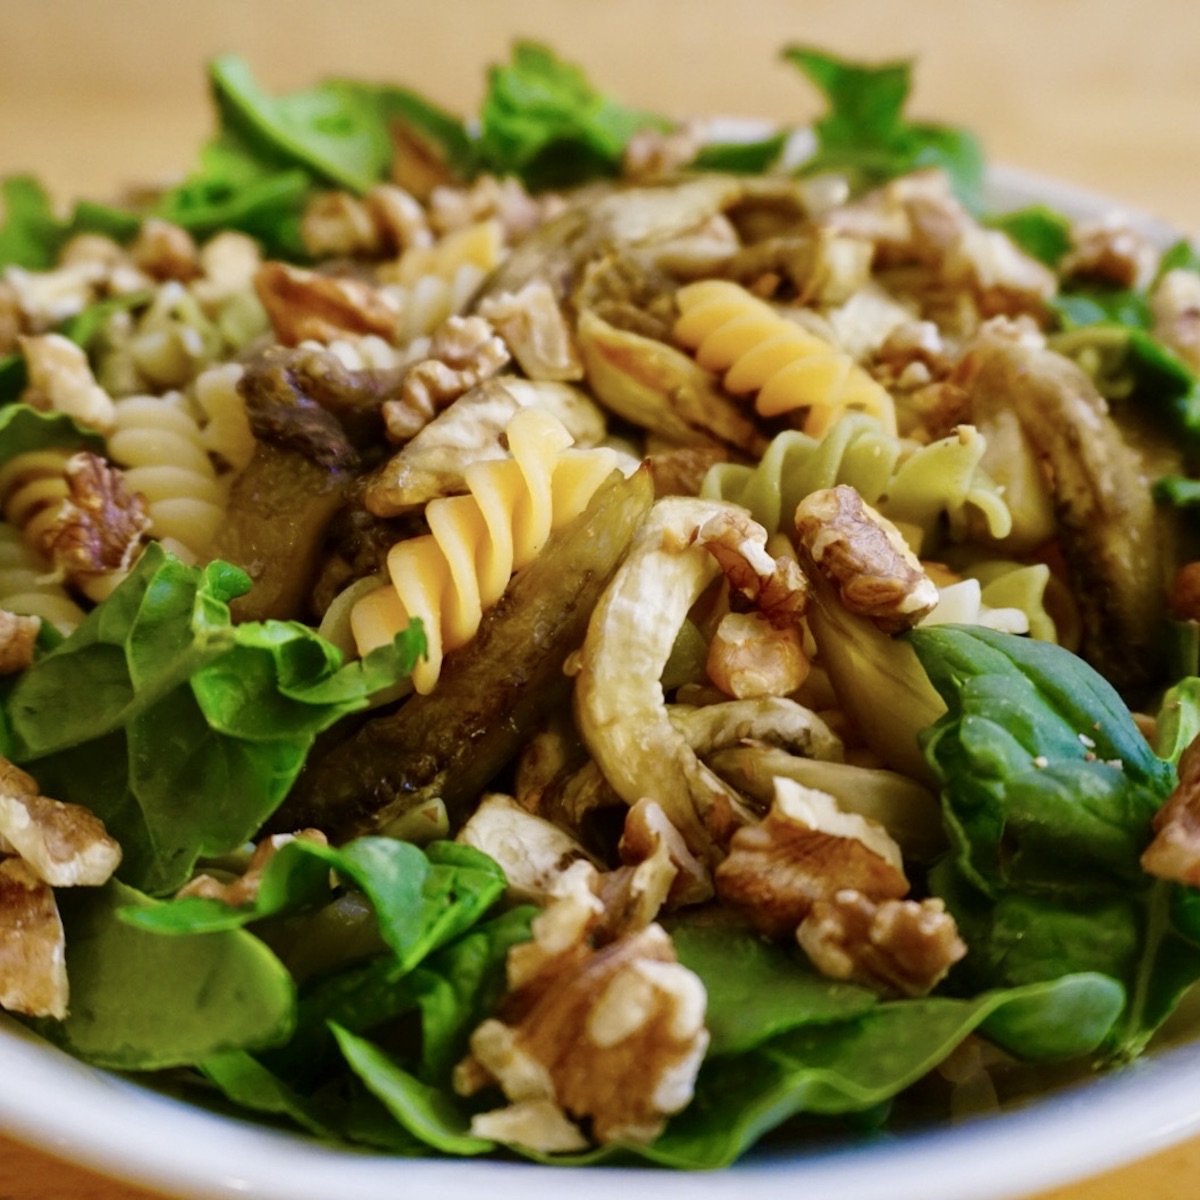 Aubergine and pasta salad